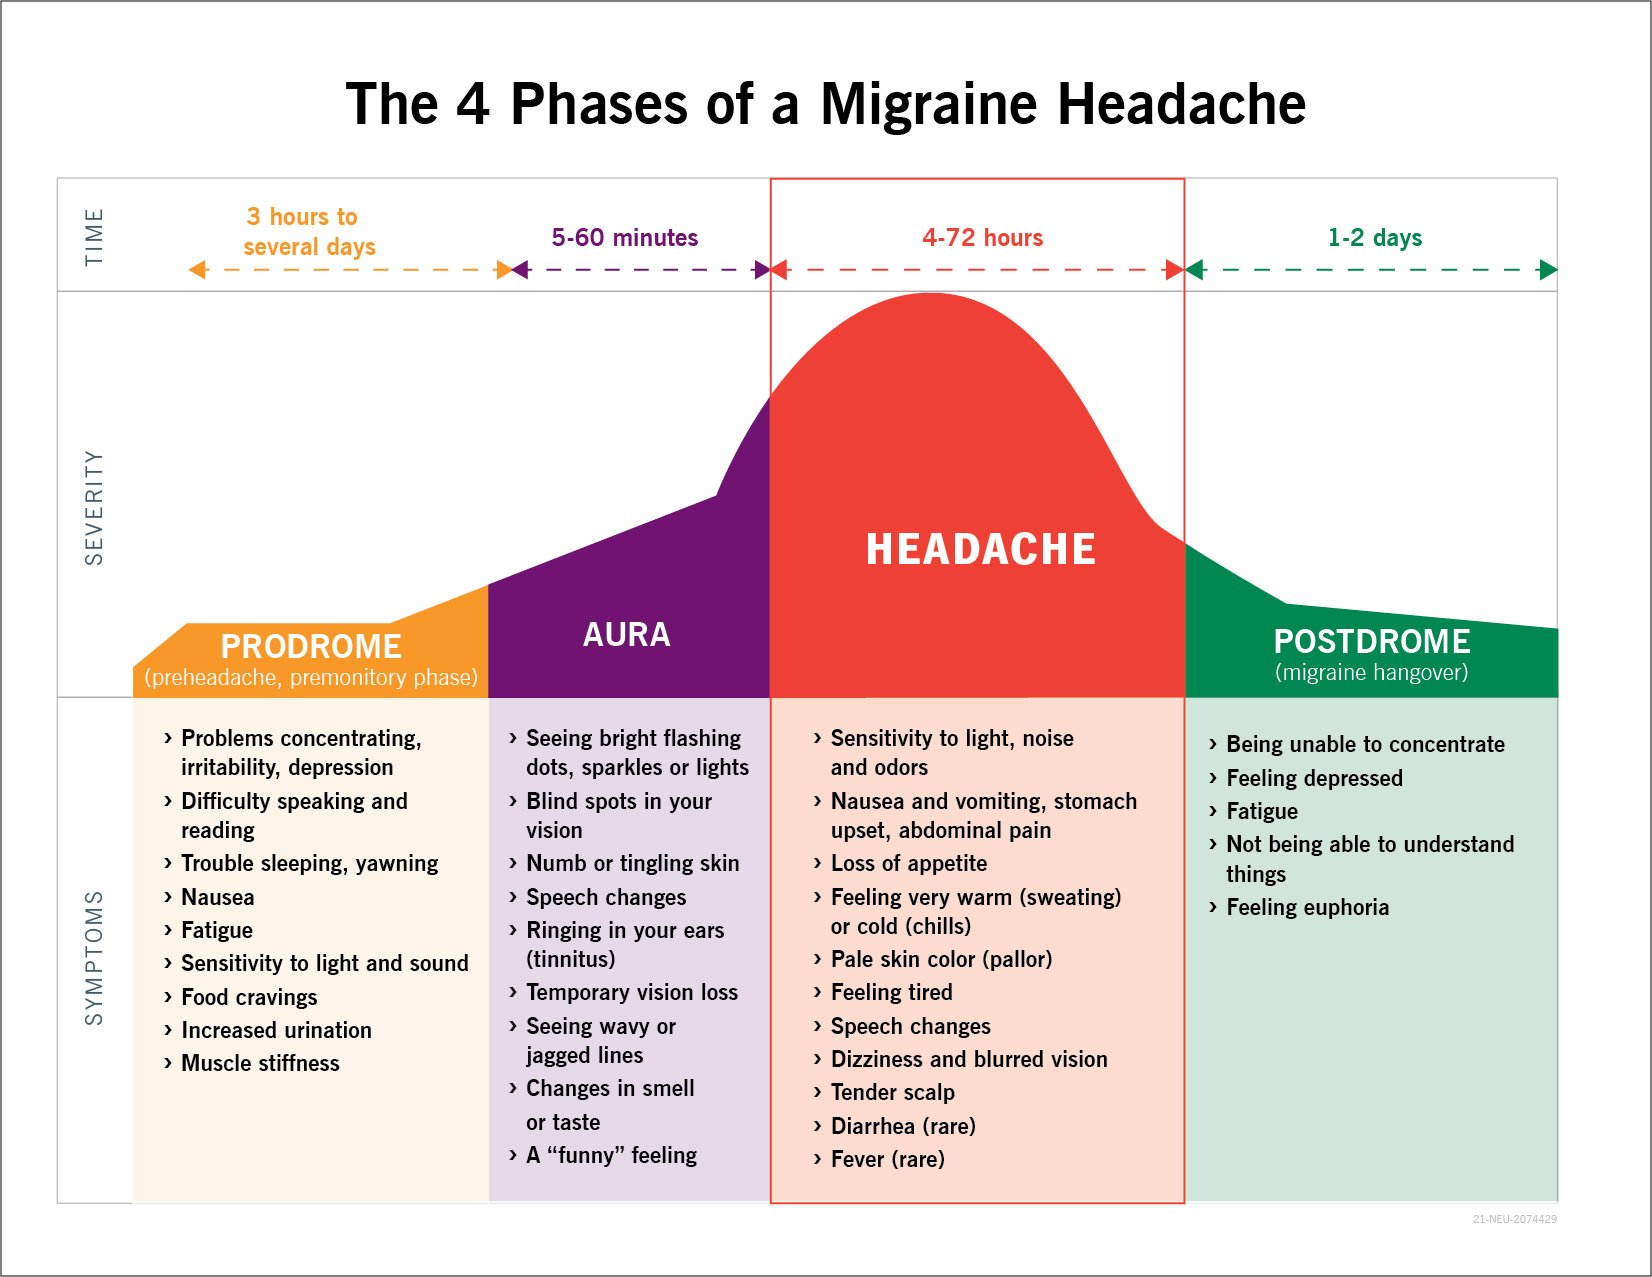 偏头痛的4个阶段示意图:前驱期，先兆期，头痛，后驱期